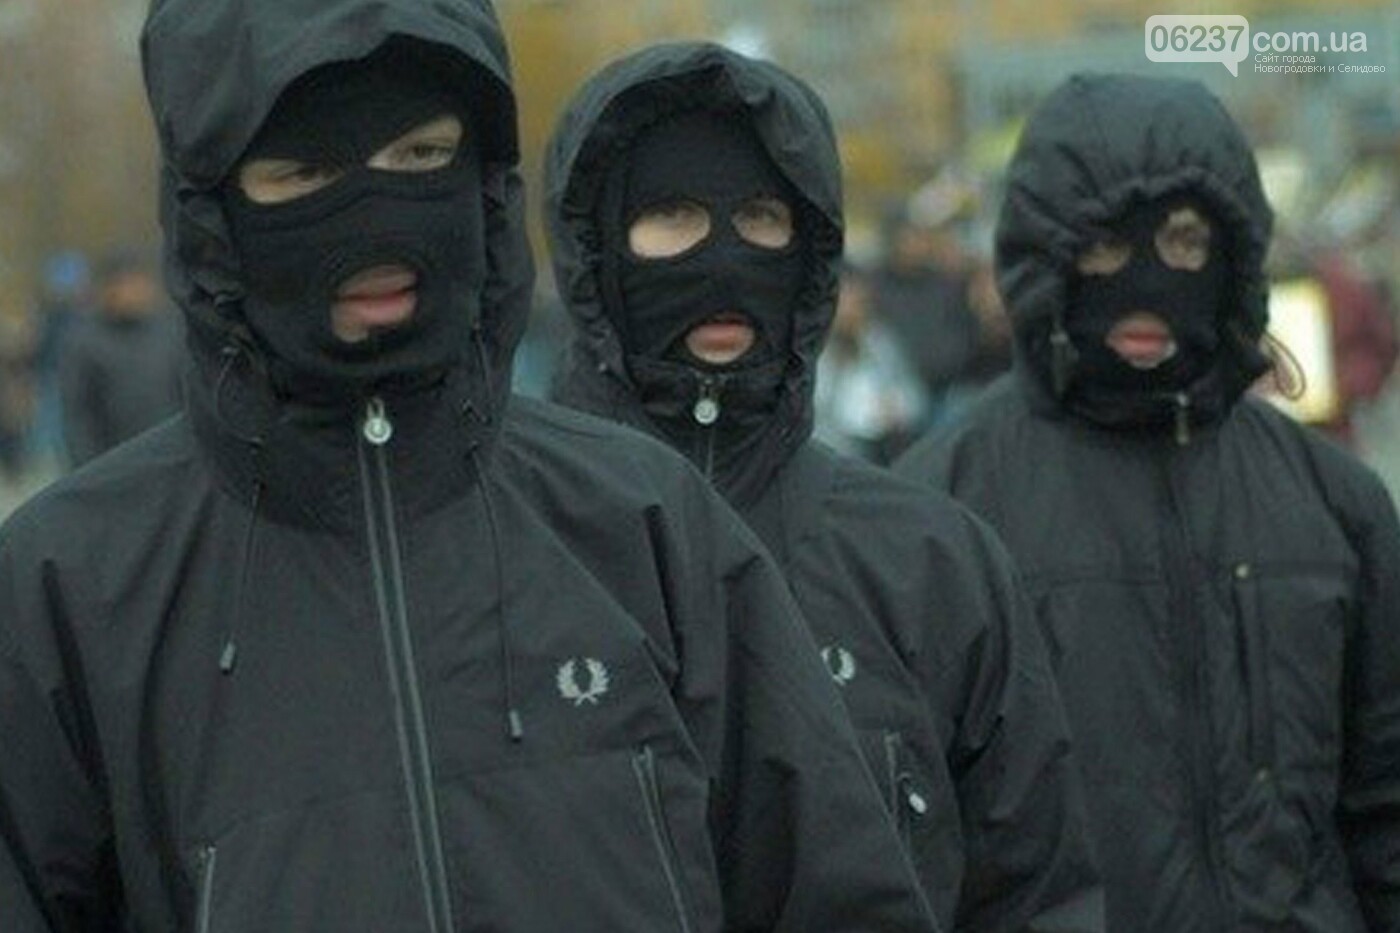 Под Одессой бандиты в масках на глазах у полиции расстреляли активистов: фото и видео, фото-1